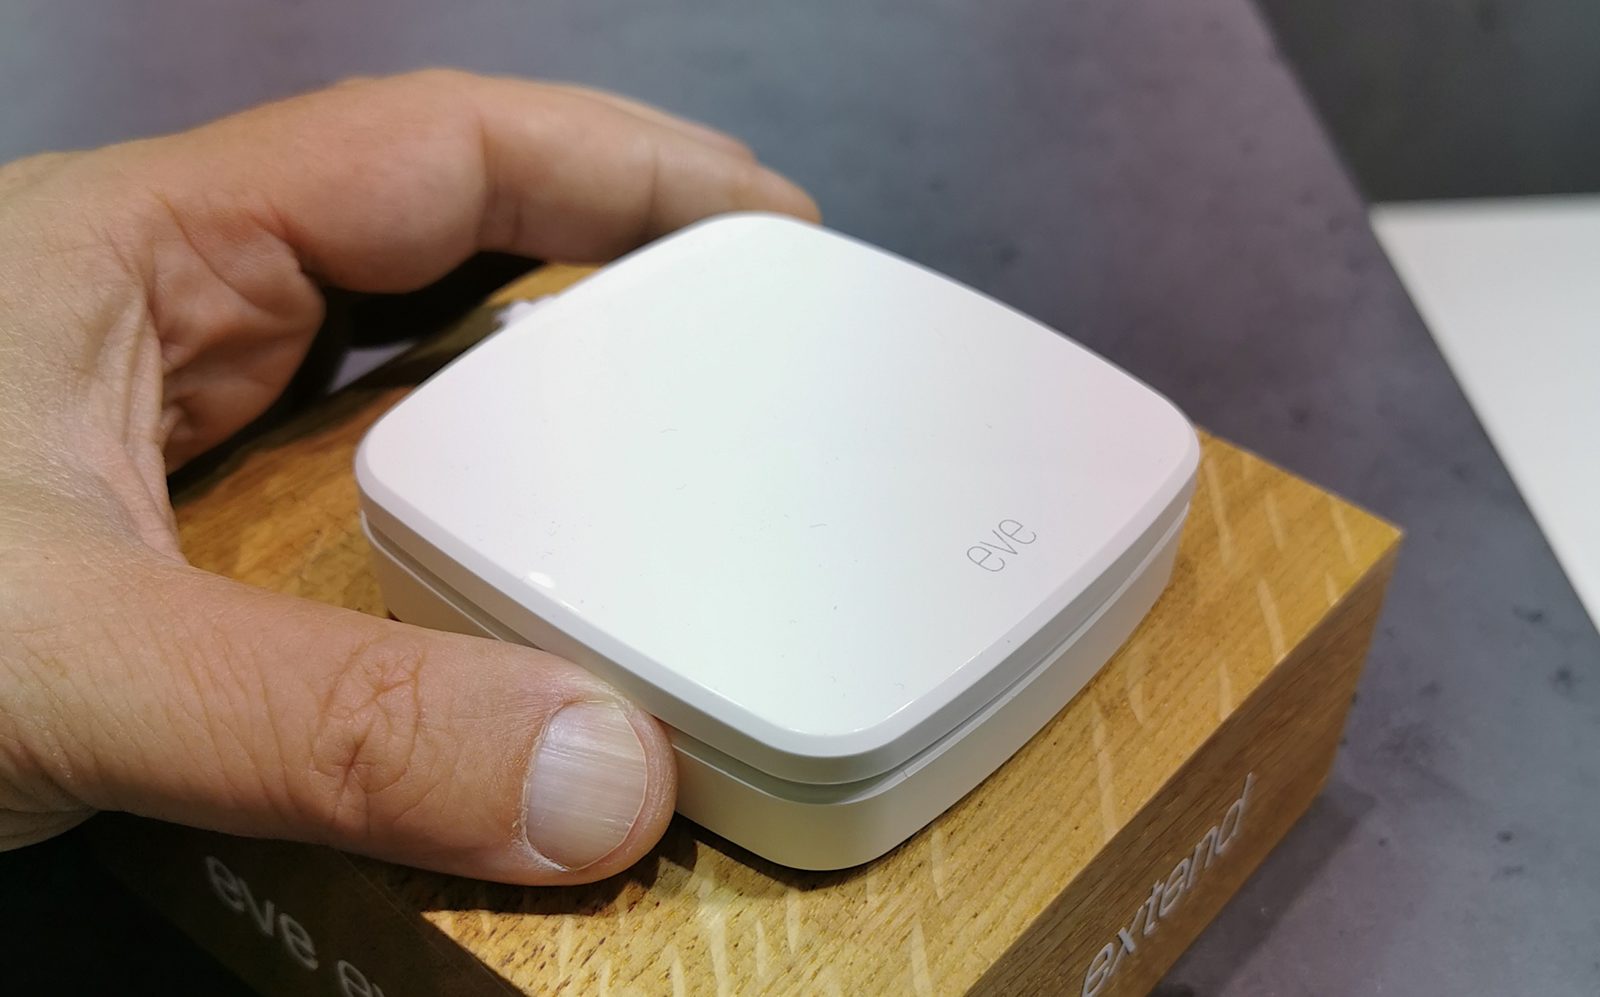 Eve Extend potenzia la domotica Homekit raggiungendo con il Wi-Fi gli accessori Bluetooth più lontani